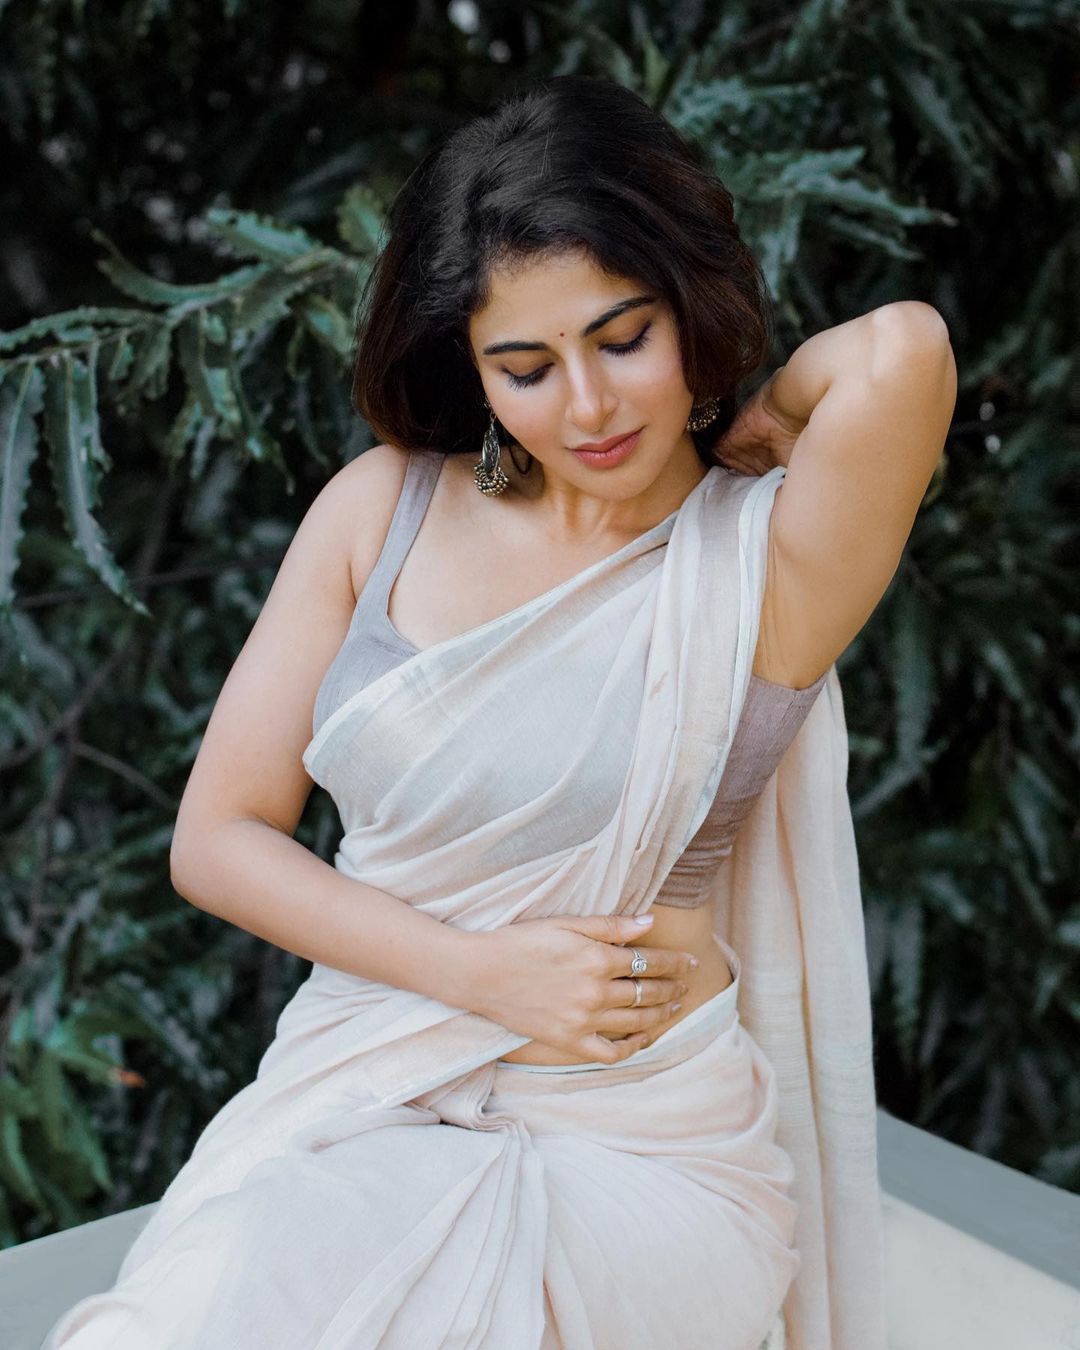 Iswarya menon hot photos in white transparent saree showing hip